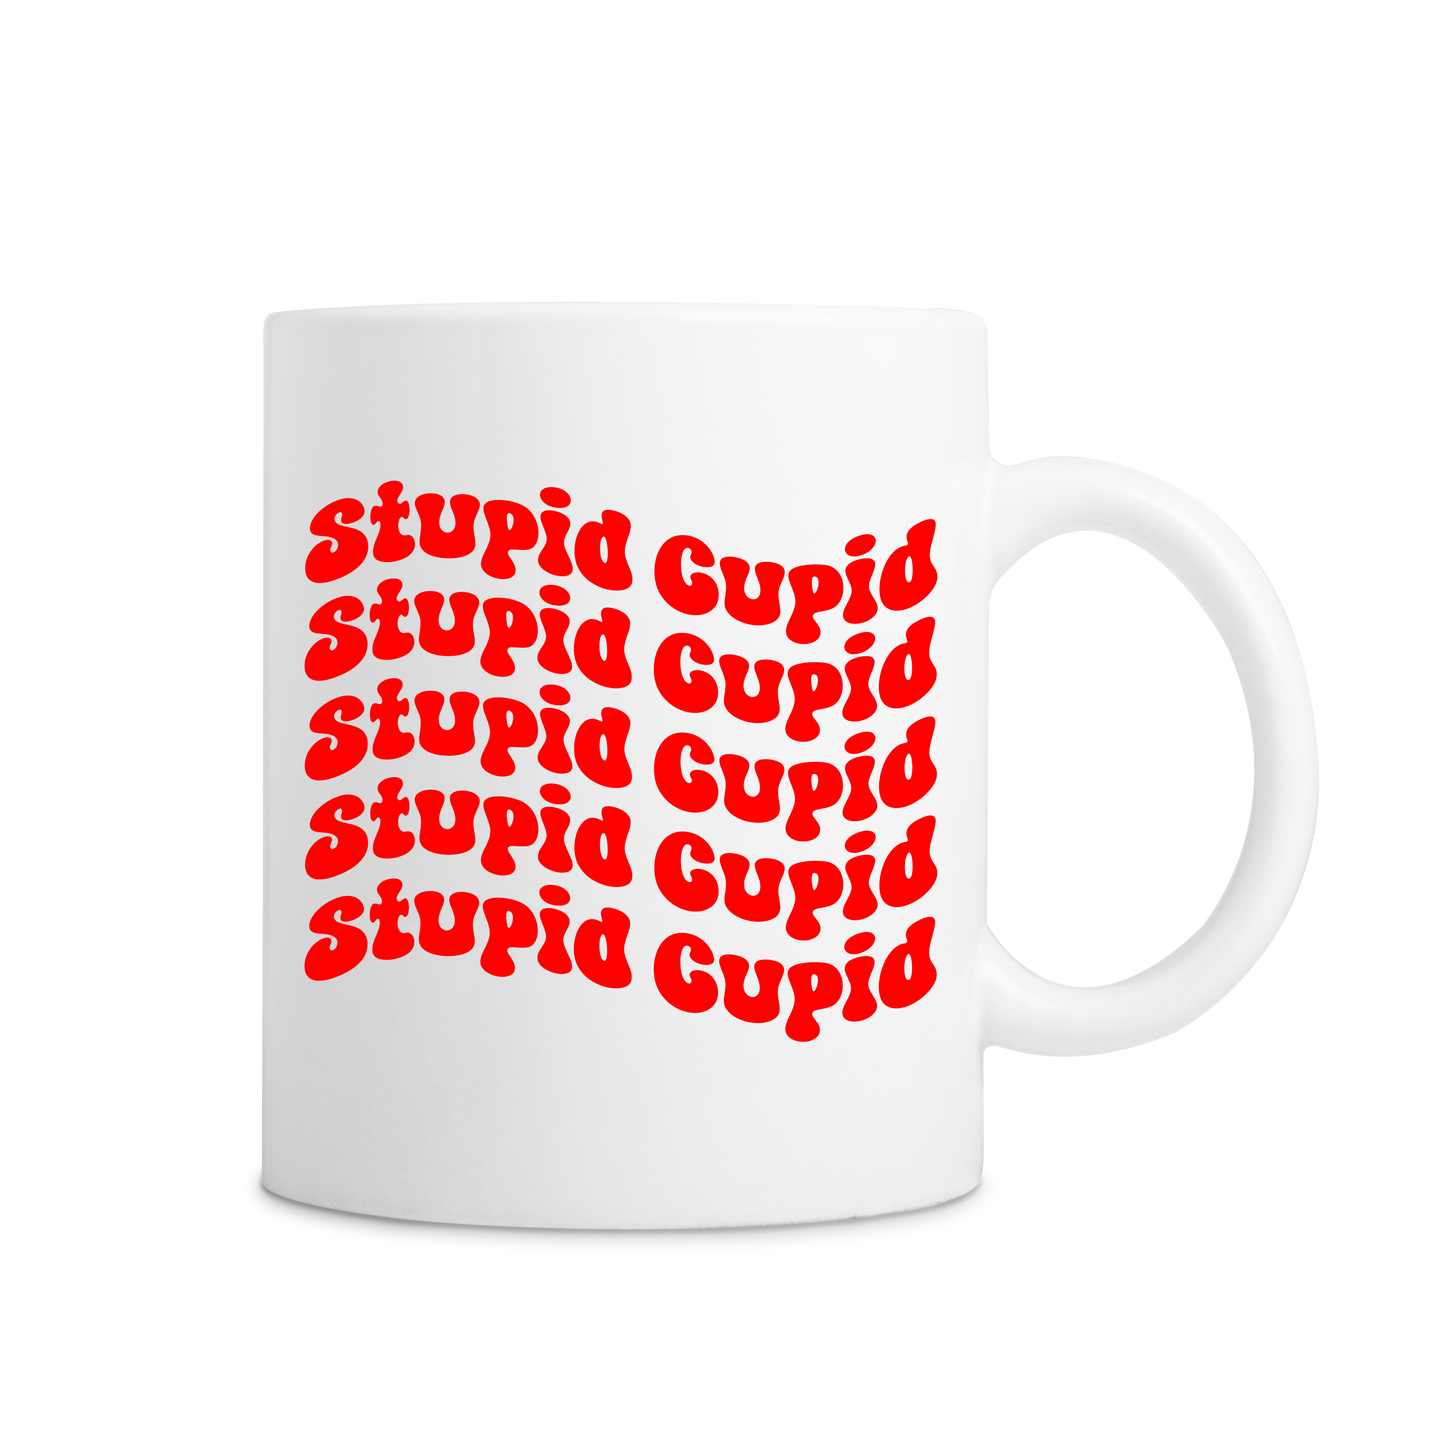 Stupid Cupid Mug - White